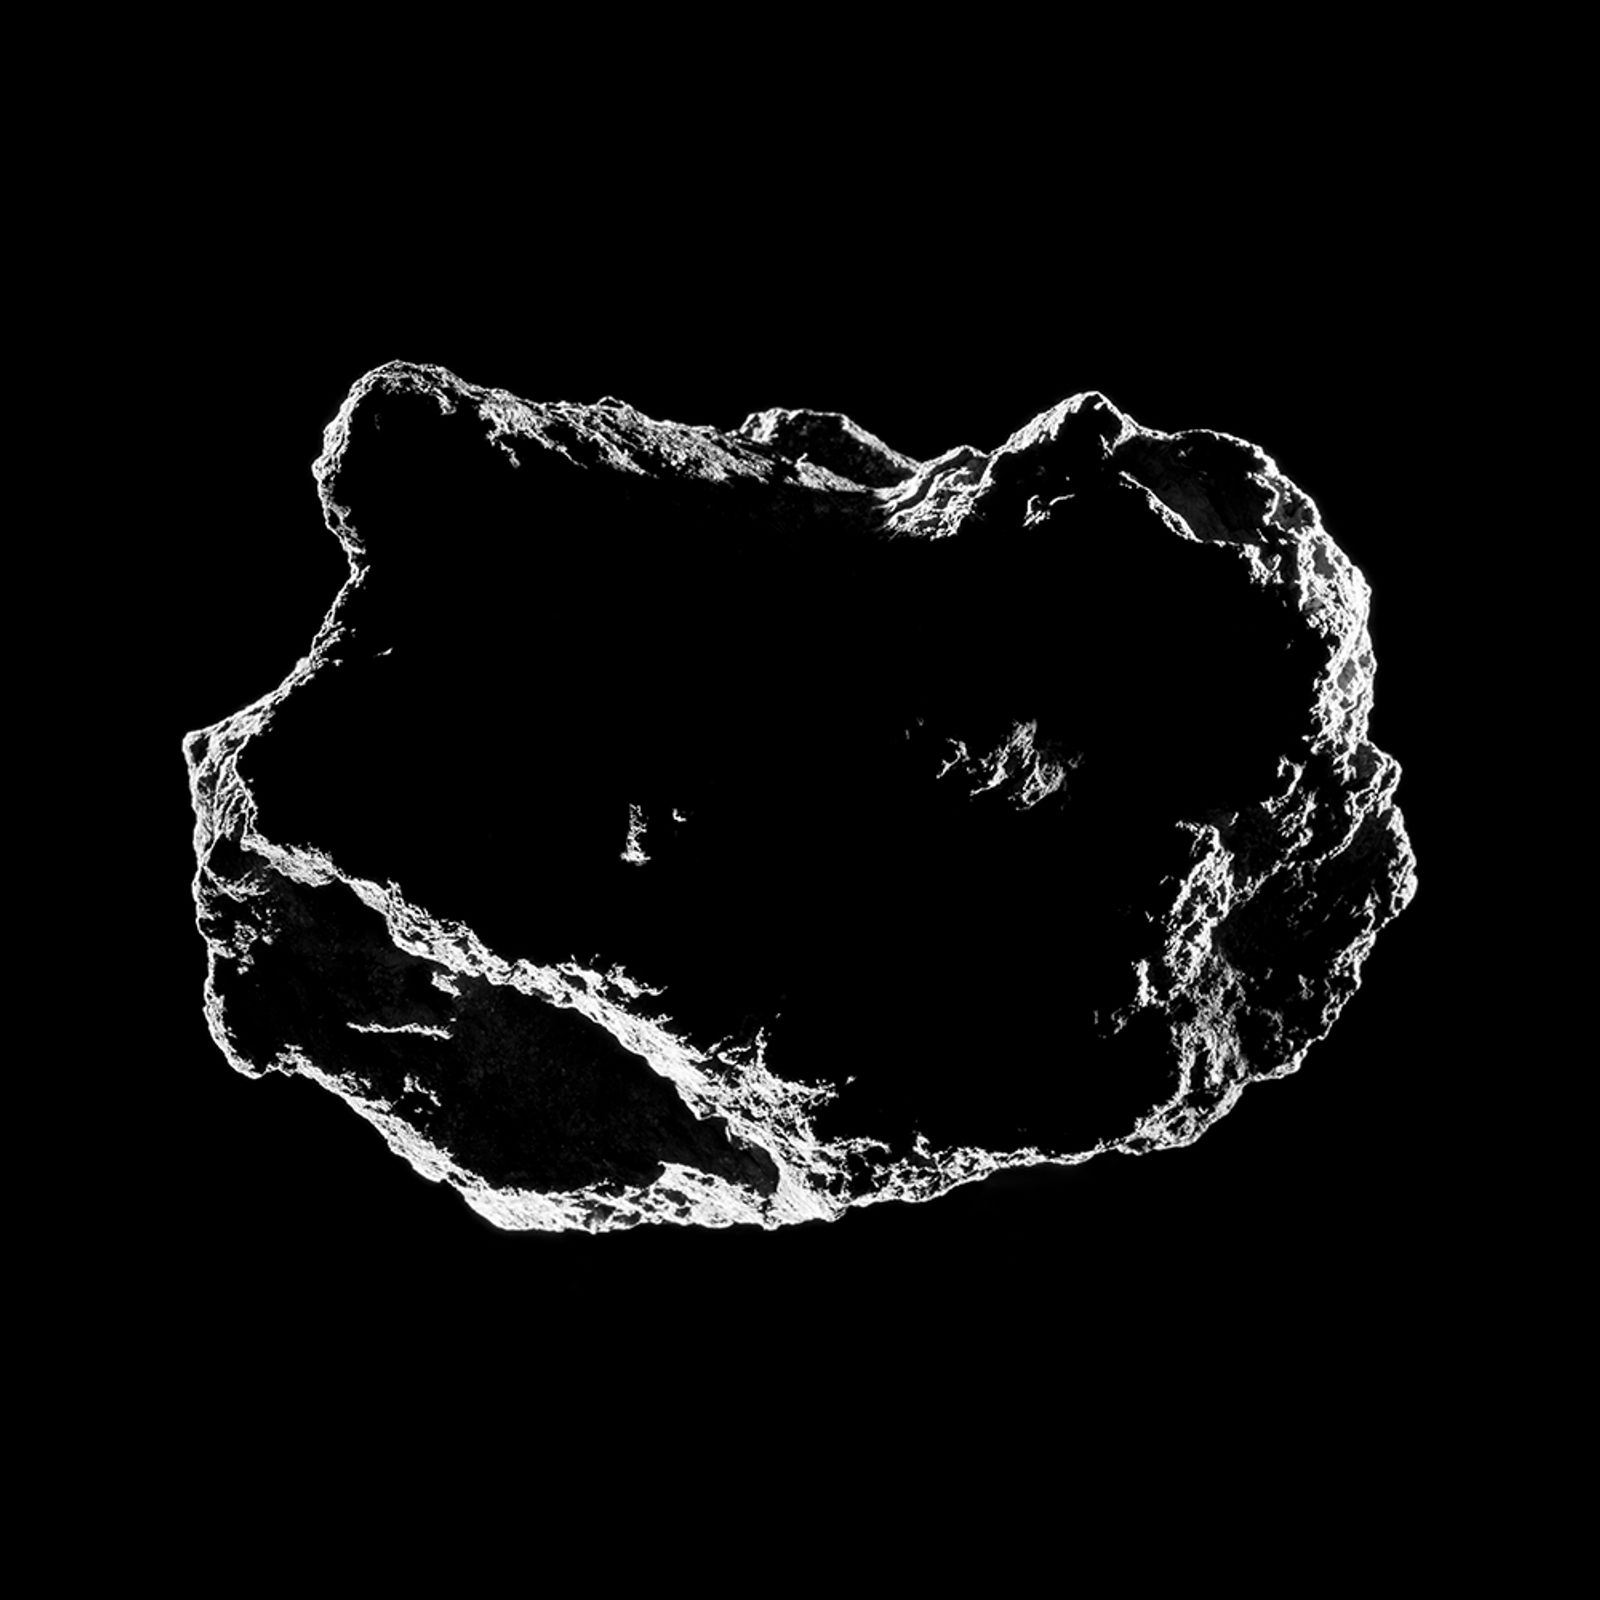 © Balazs Deim - space 11_asteroid